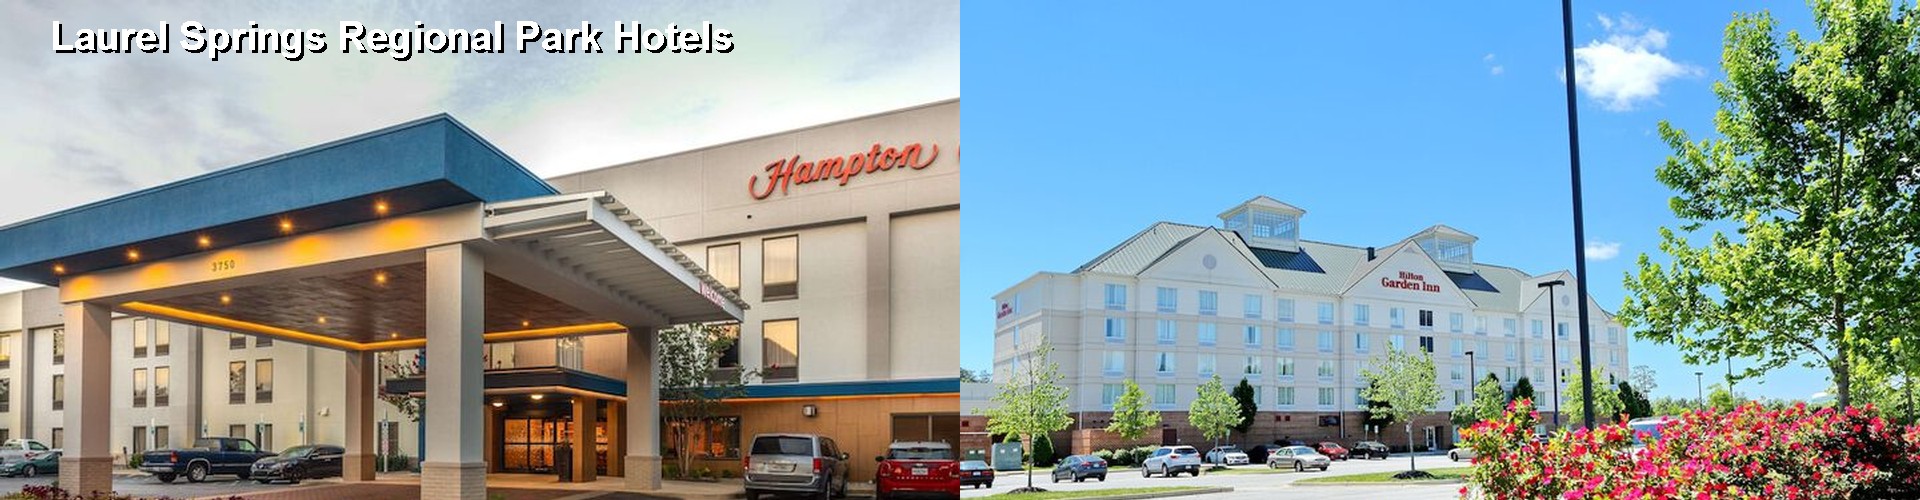 5 Best Hotels near Laurel Springs Regional Park